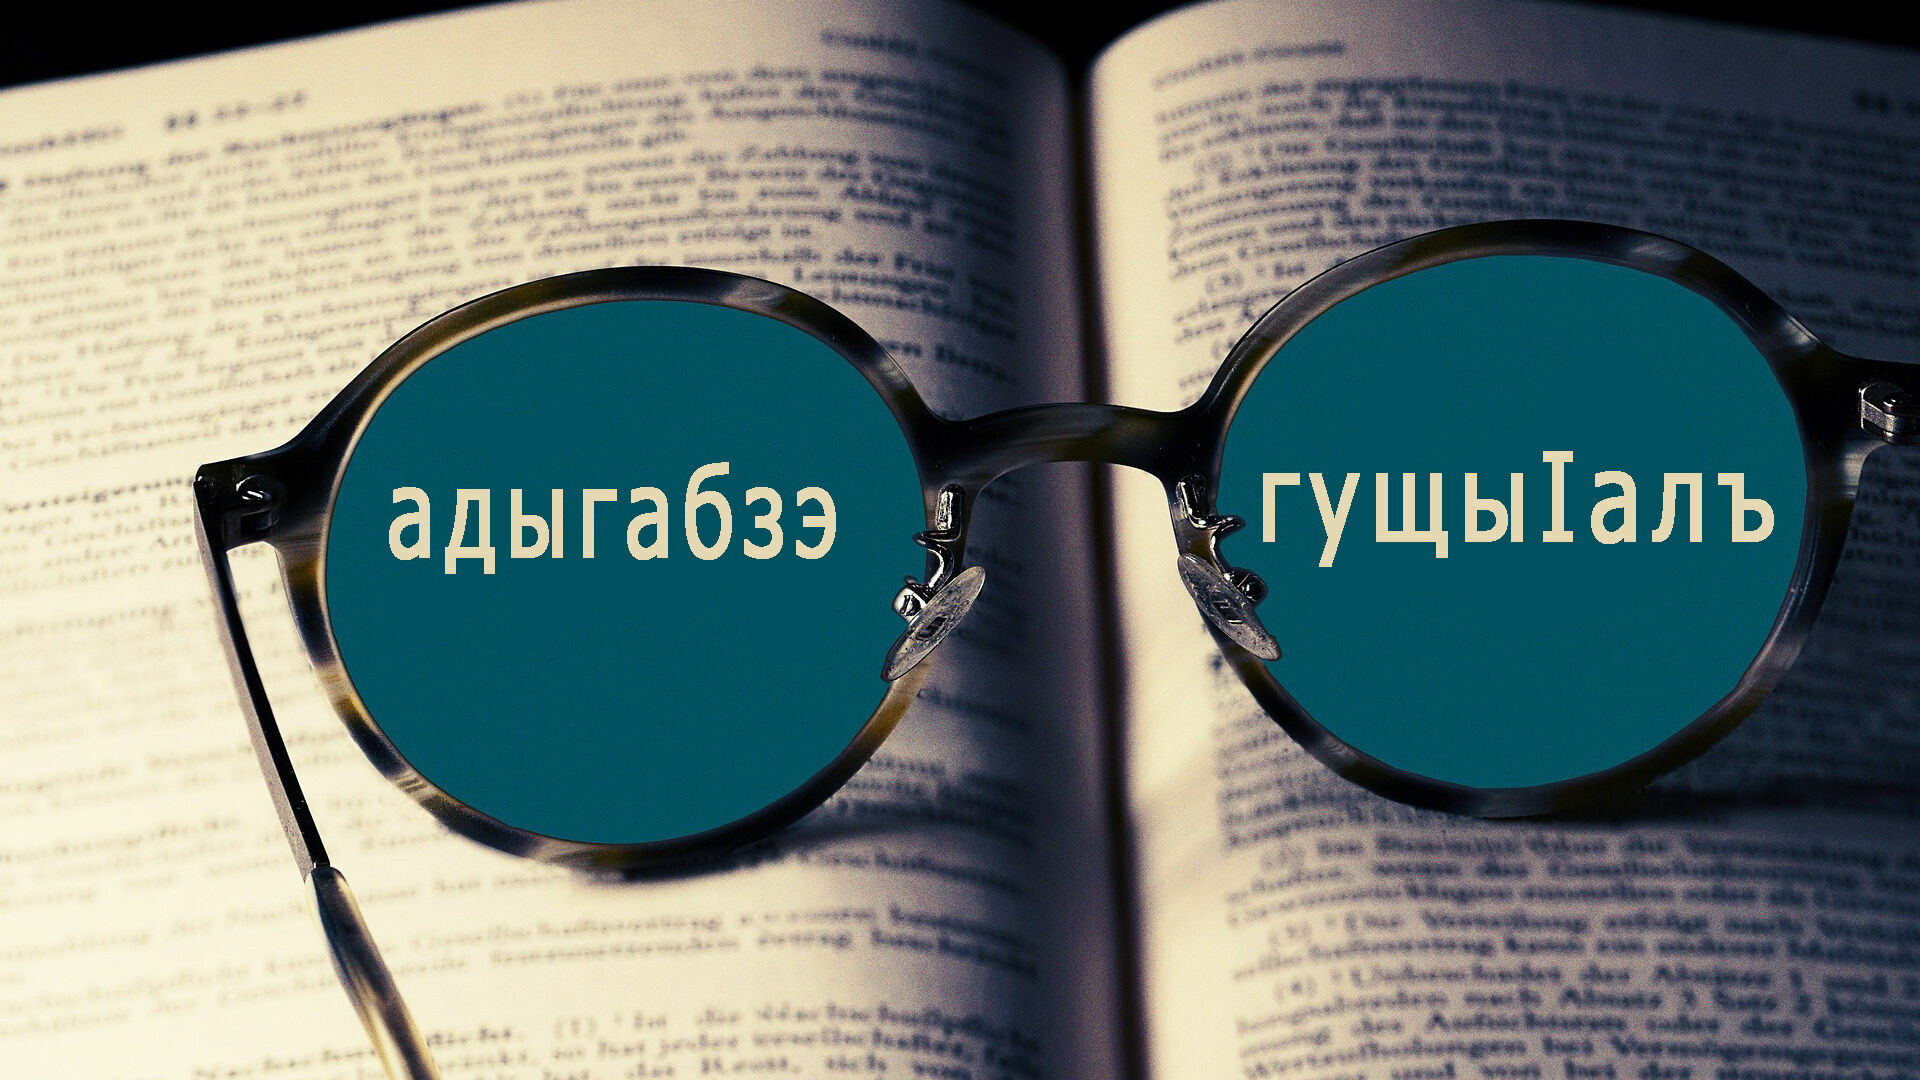 Онлайн-переводчик с адыгского на русский язык и обратно разработали в Адыгее